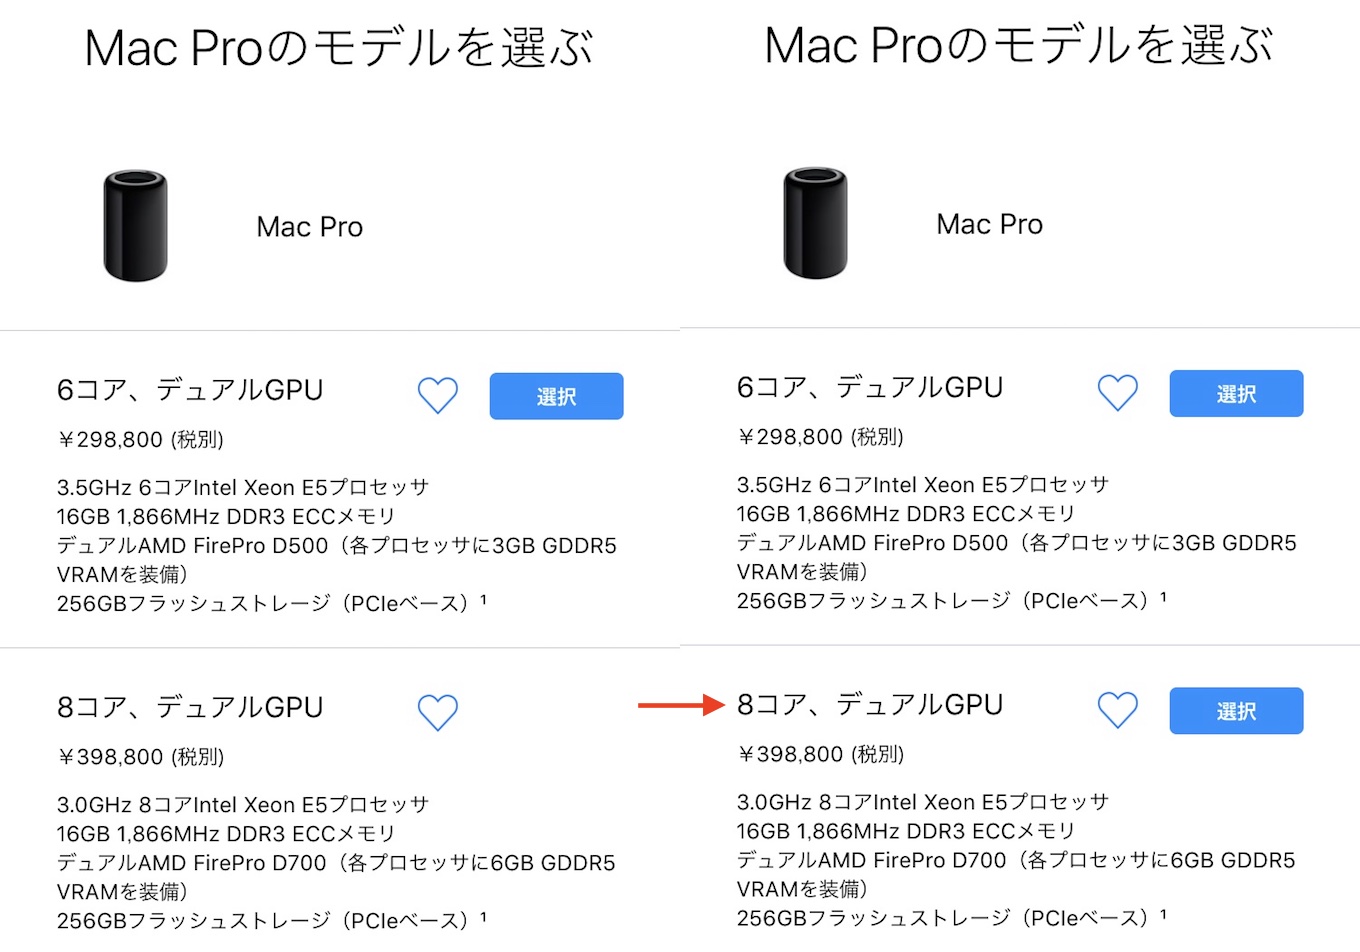 Apple、アップデートされたMac Pro (Late 2013) 上位モデルの販売を